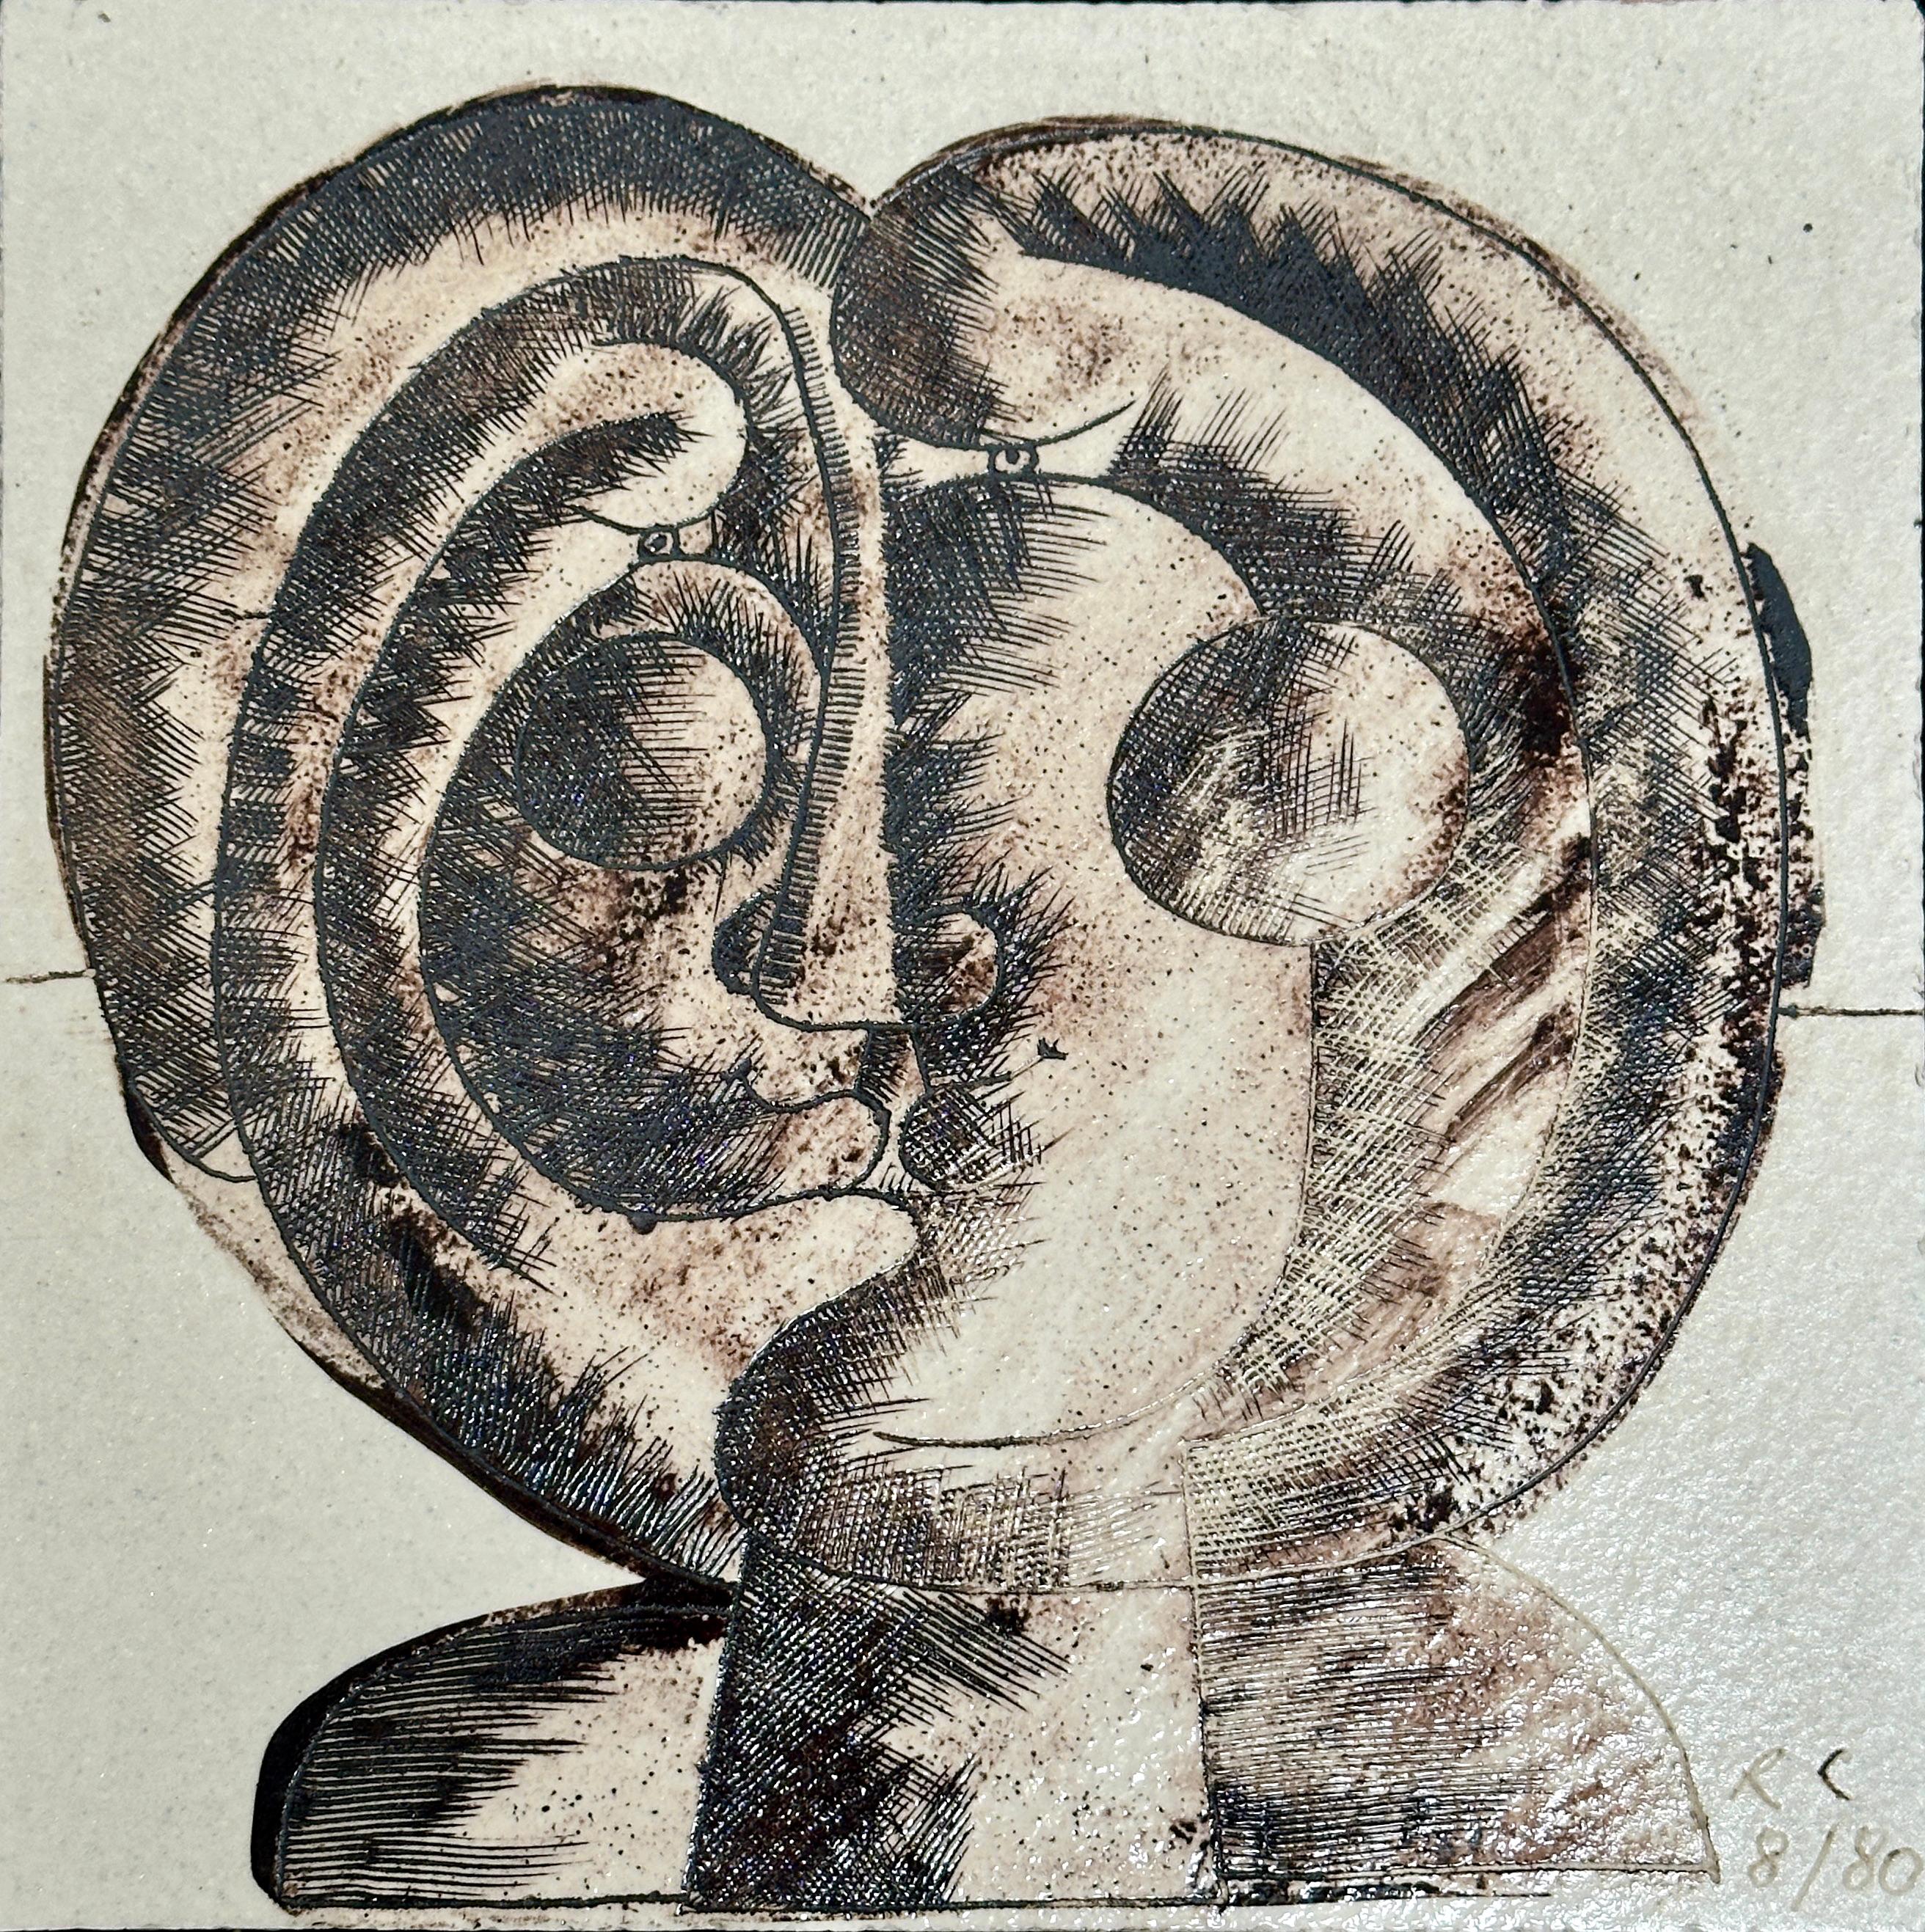 Pièce unique en grès à décor d'oxydes figurant une créature chimérique composée de 2 profils adjacents.
Cadre en bois laqué.
Porte les initiales de l'artiste et sa date de création

Parfait état d'origine.

À propos de l'artiste 

Roger Capron